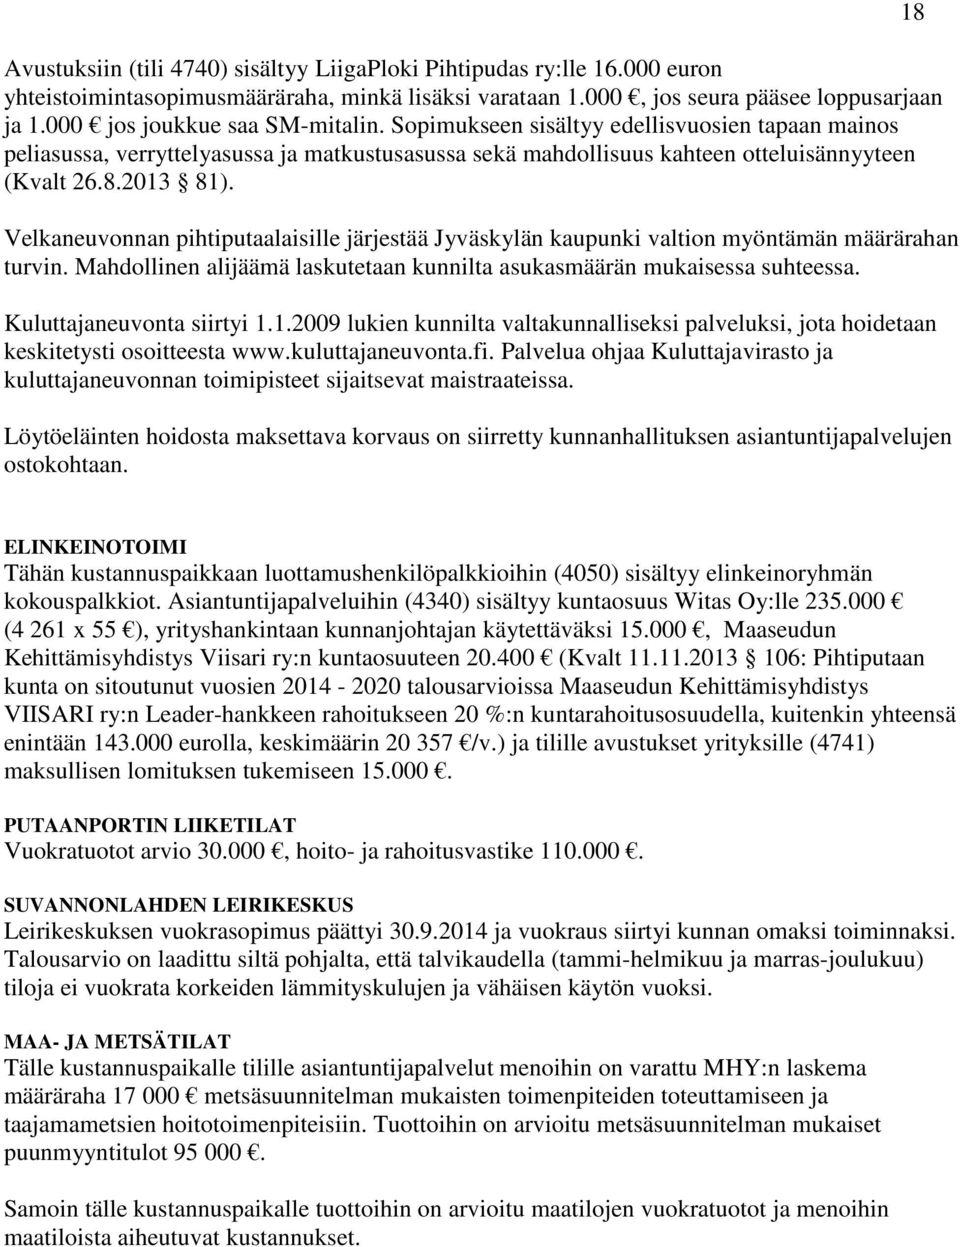 Velkaneuvonnan pihtiputaalaisille järjestää Jyväskylän kaupunki valtion myöntämän määrärahan turvin. Mahdollinen alijäämä laskutetaan kunnilta asukasmäärän mukaisessa suhteessa.